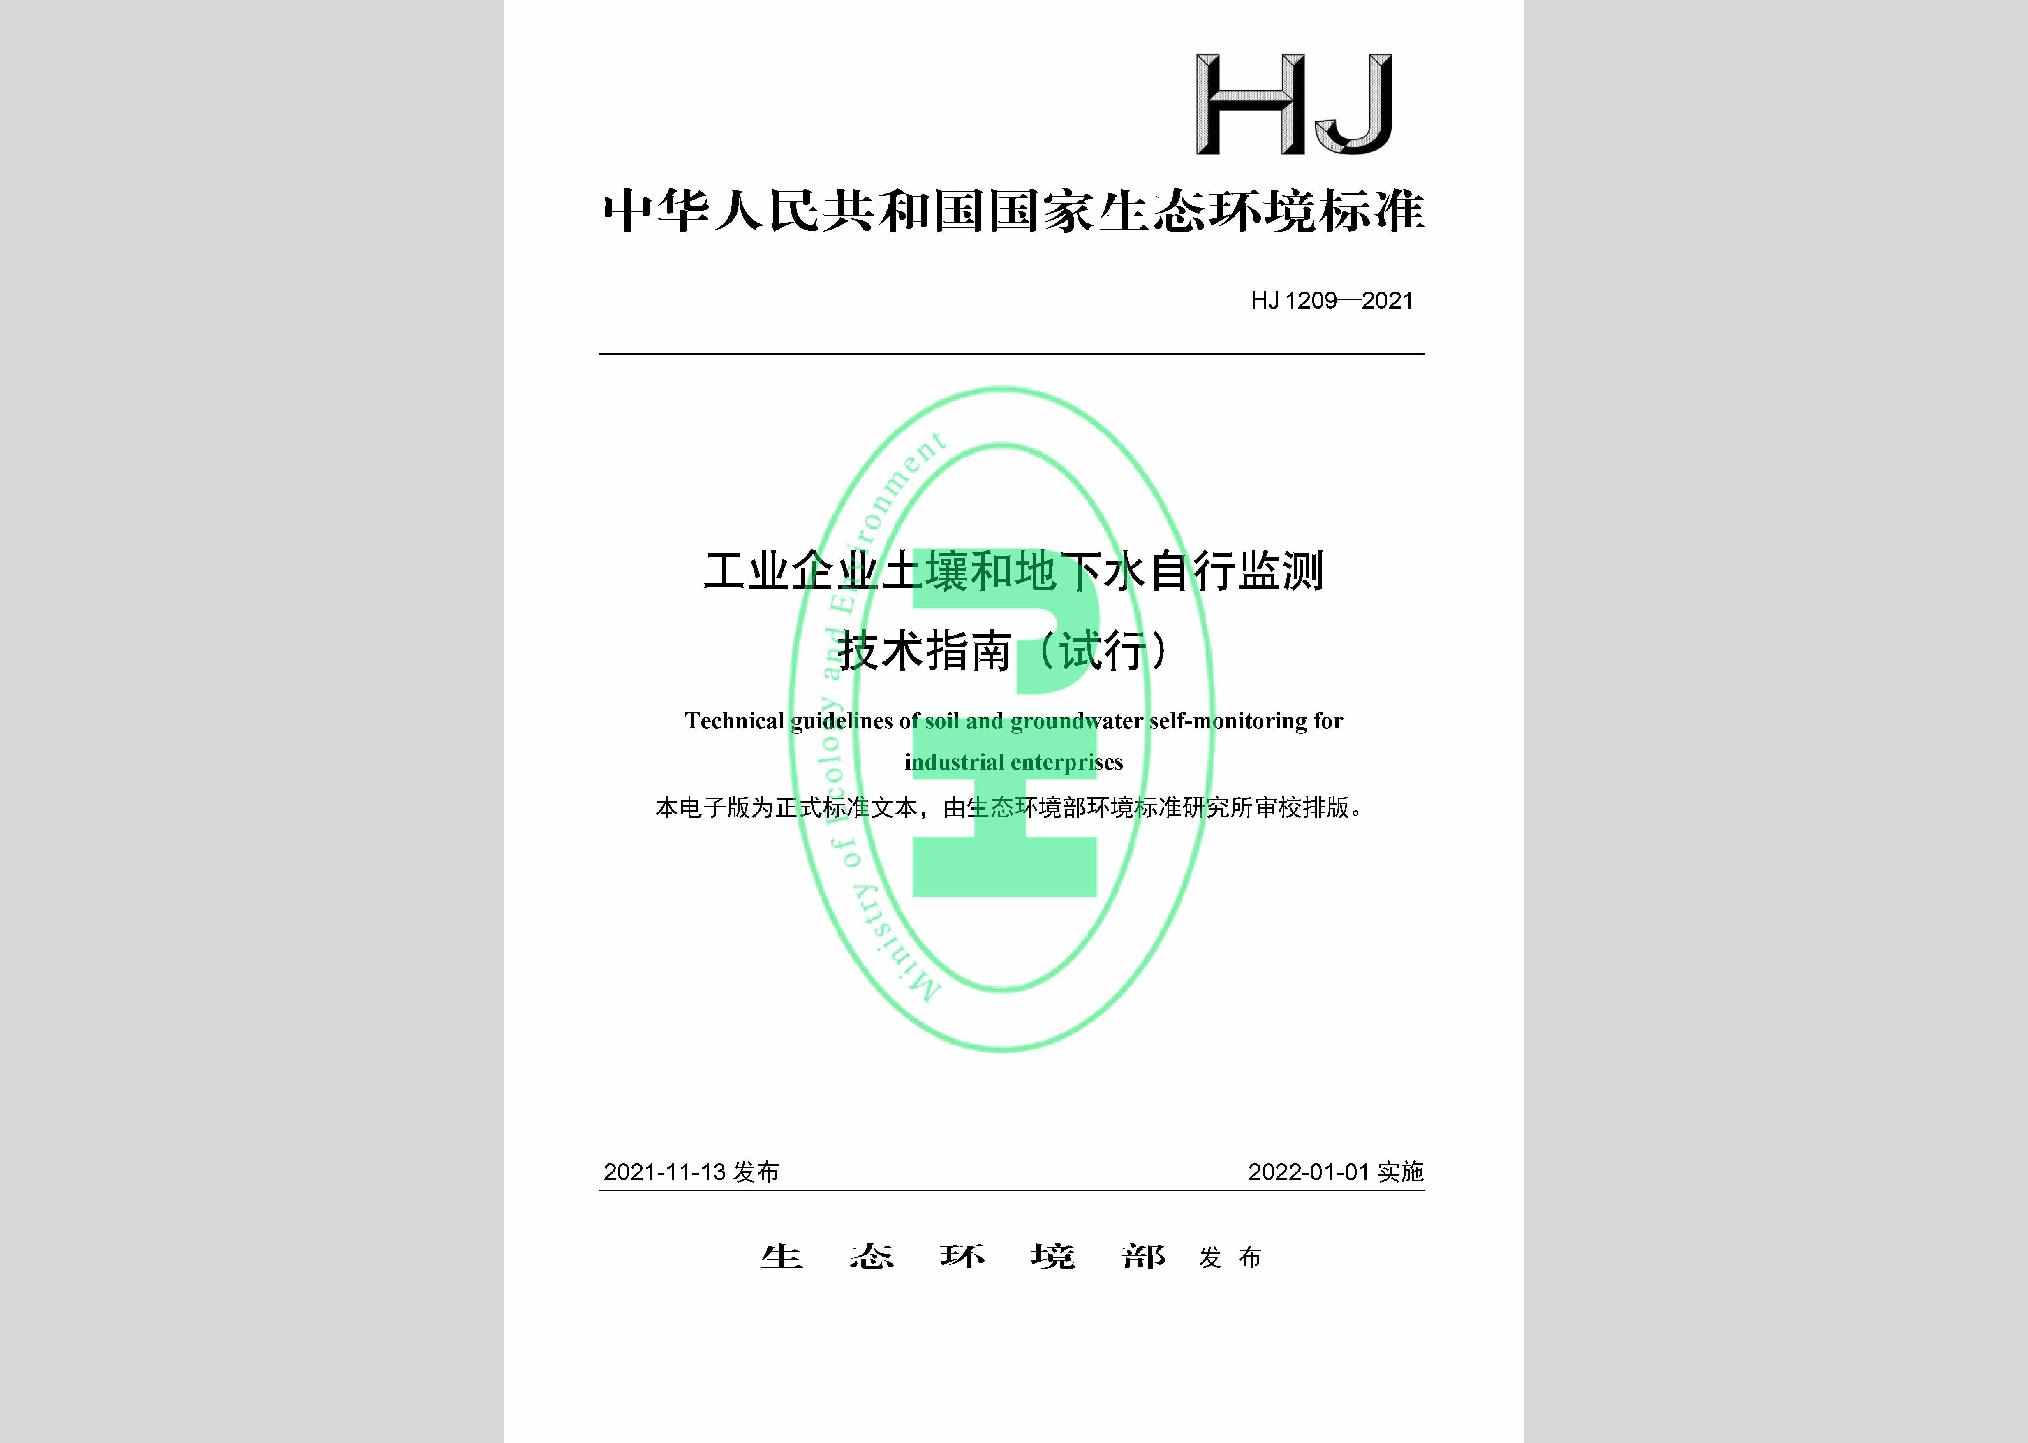 HJ1209-2021：工业企业土壤和地下水自行监测技术指南（试行）